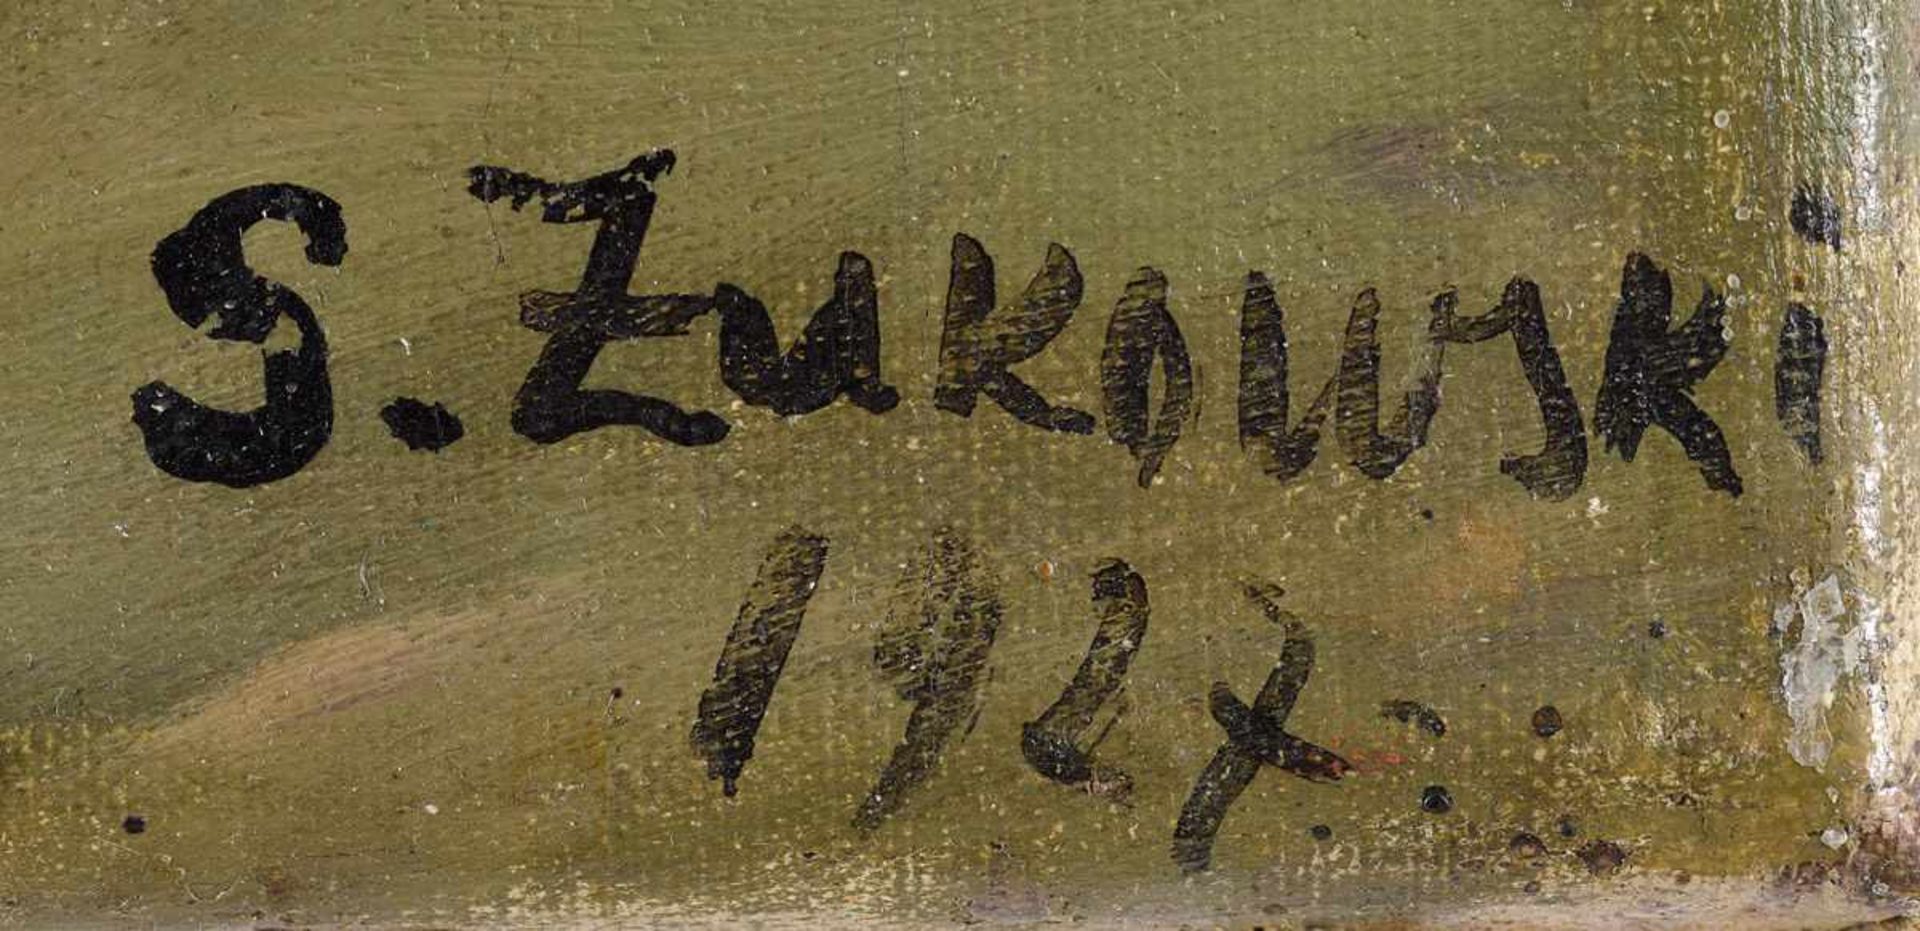 Zukowski, Stanislaw 1875 Jedrychowice bei Grodno - 1944 PruszkowWaldlandschaft mit Bachlauf. - Image 3 of 5